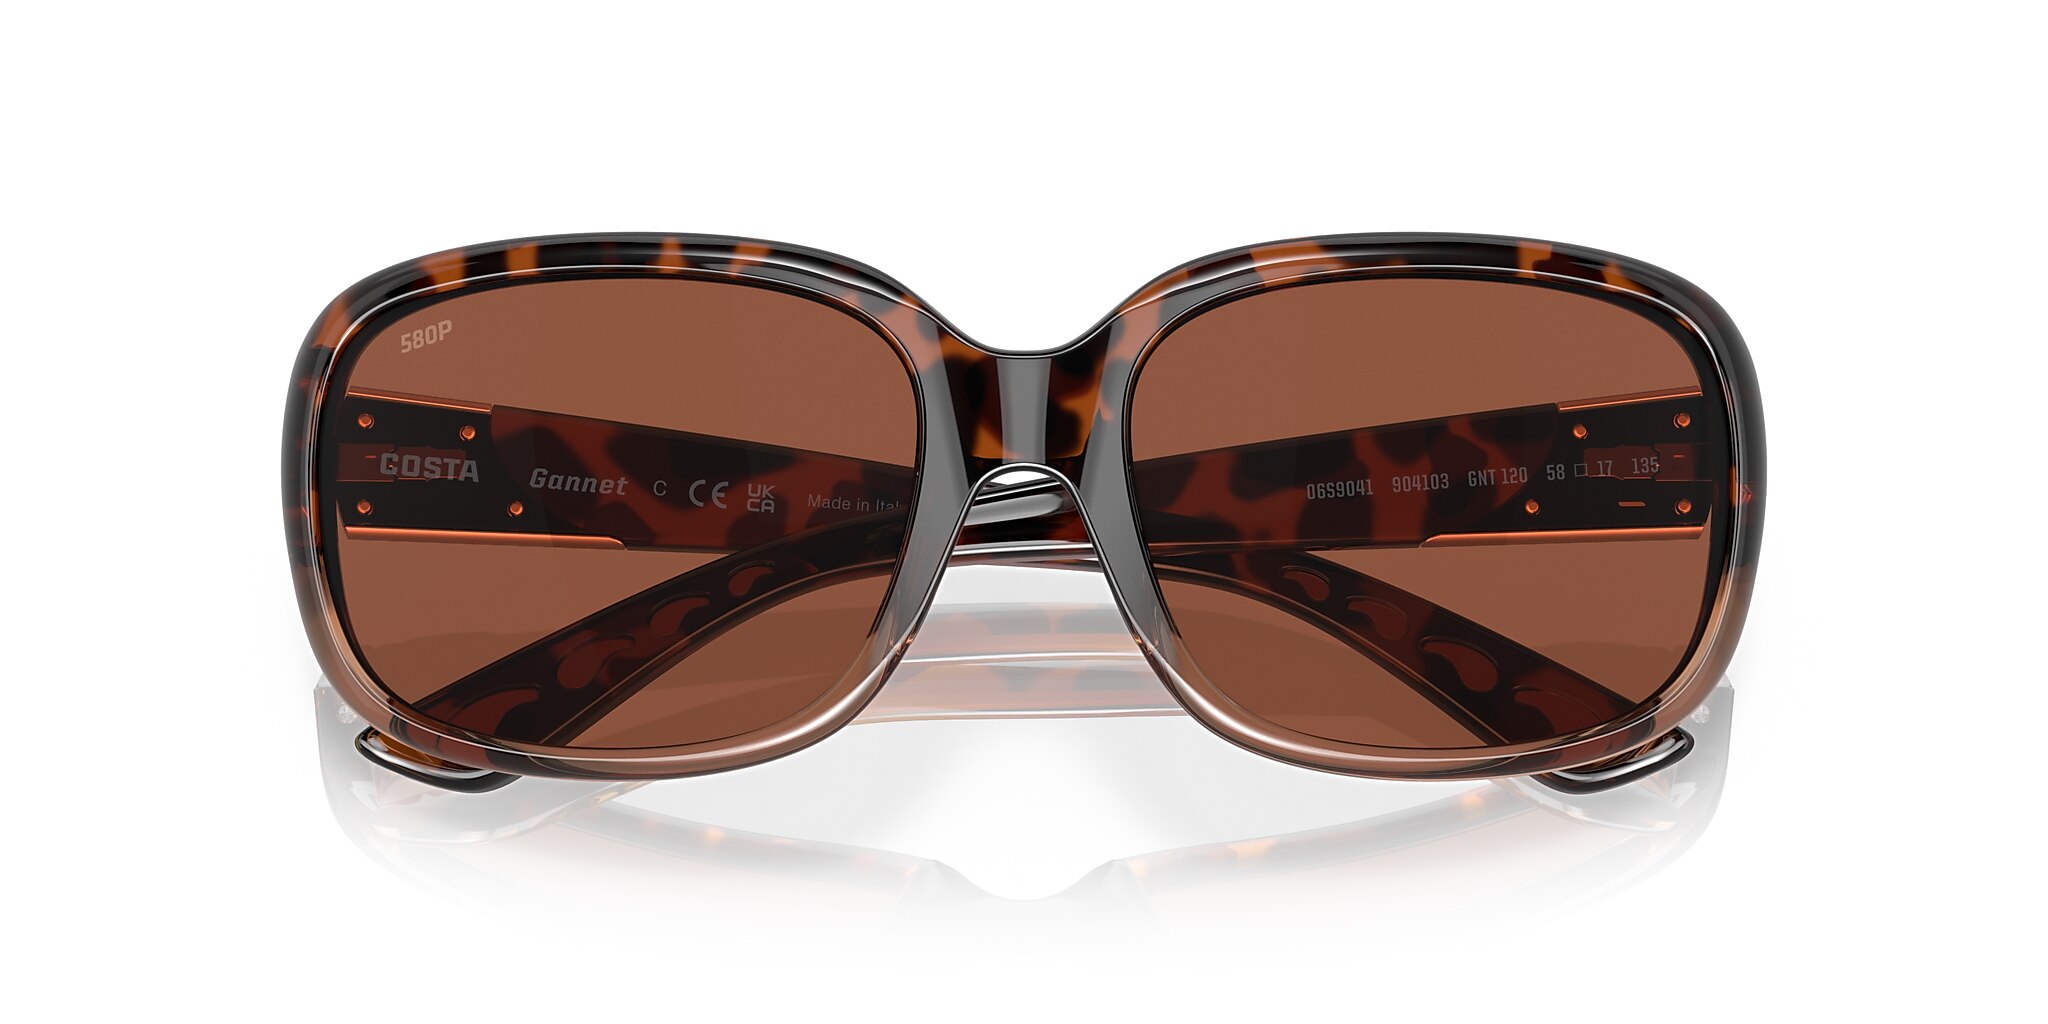 Gannet Polarized Sunglasses in Copper | Costa Del Mar®